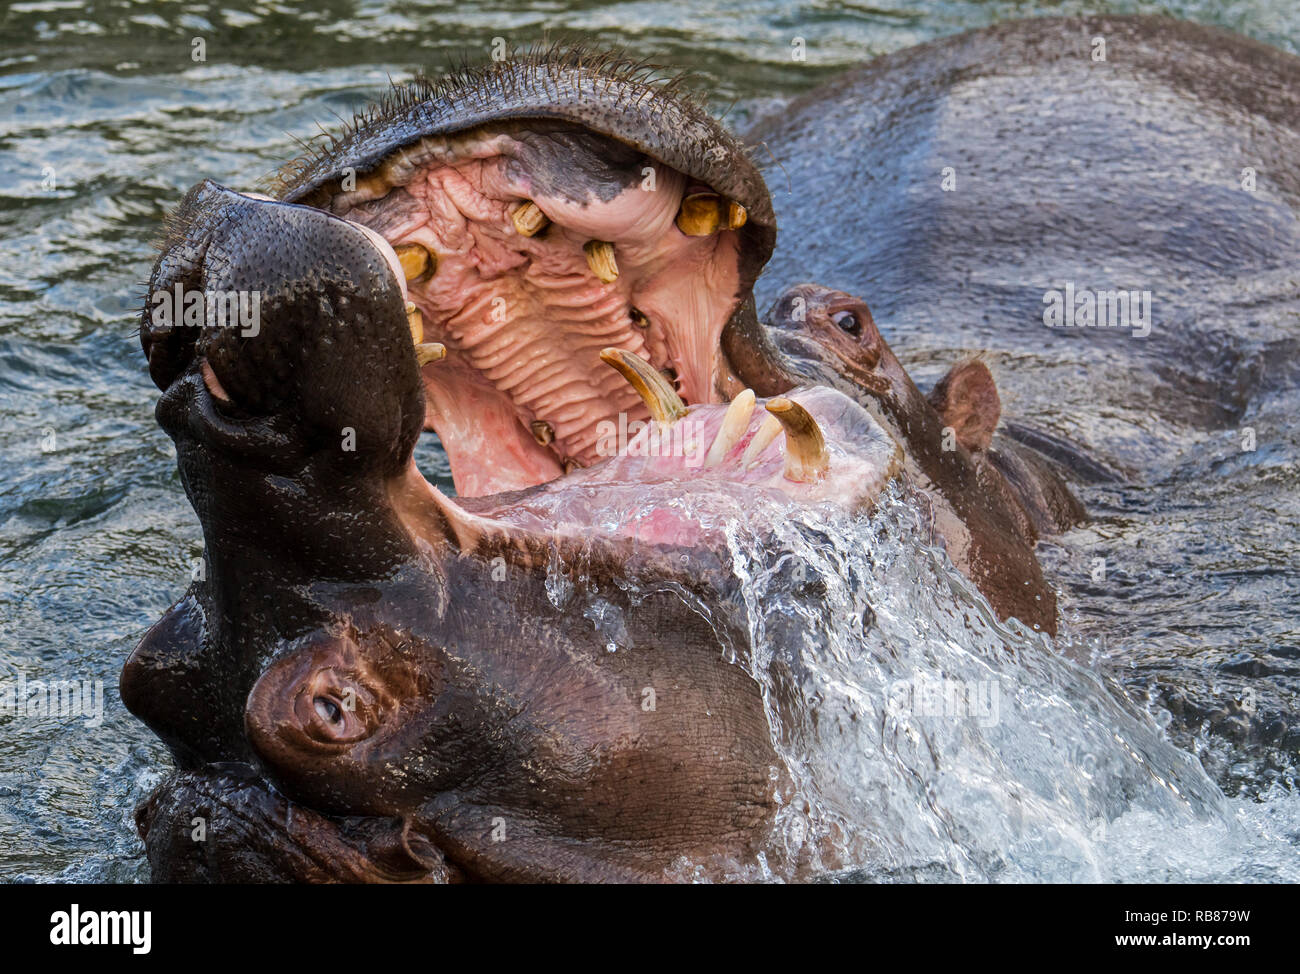 La lutte contre l'hippopotame / hippos (Hippopotamus amphibius) dans le lac montrant d'énormes dents et de grandes défenses canine dans la bouche grande ouverte Banque D'Images